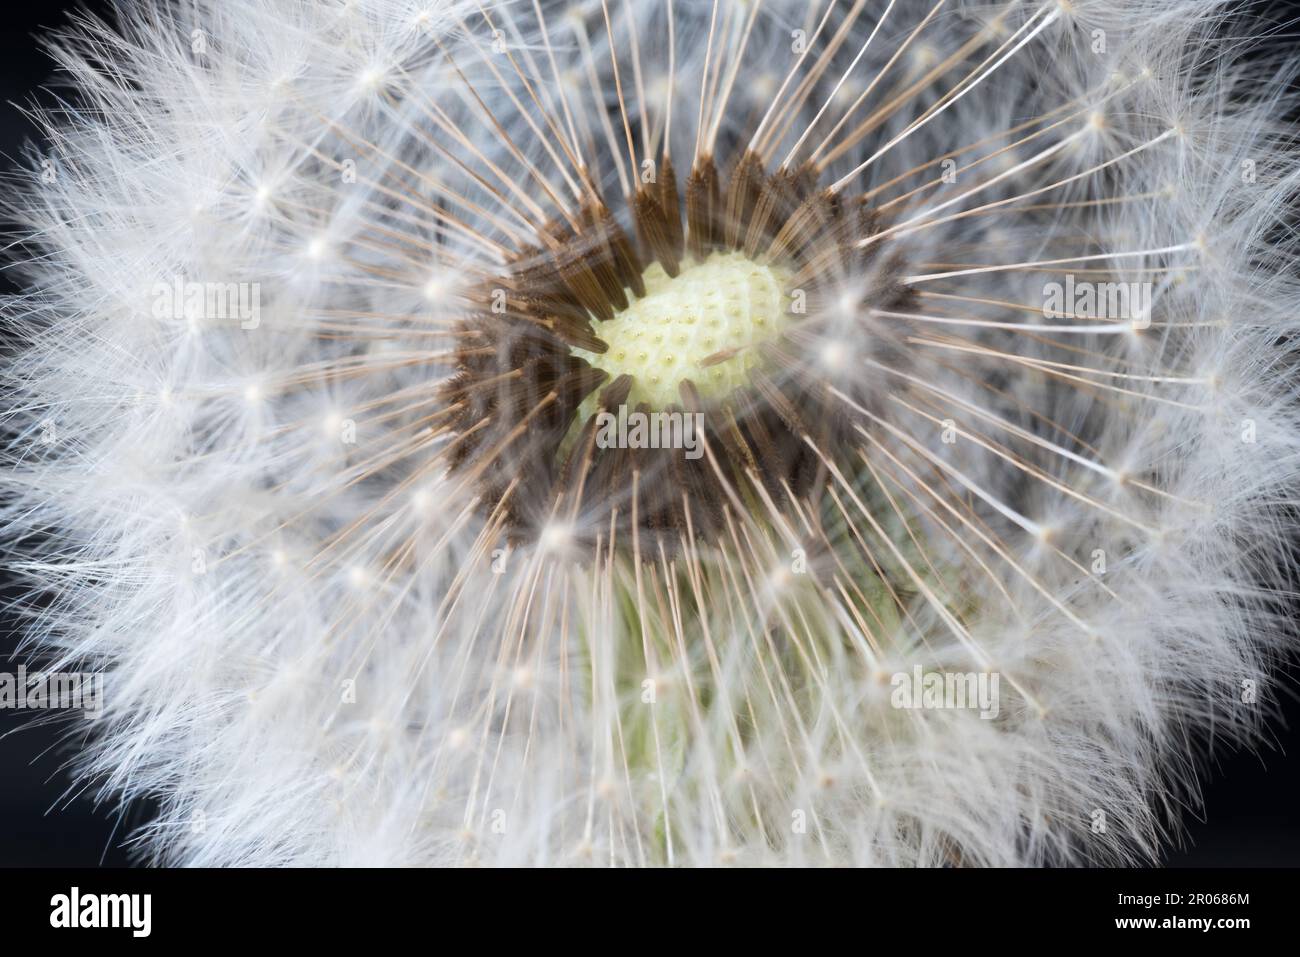 foto macro ad un bel soffione con i suoi semi, i semi del soffione che volano in primavera Stock Photo